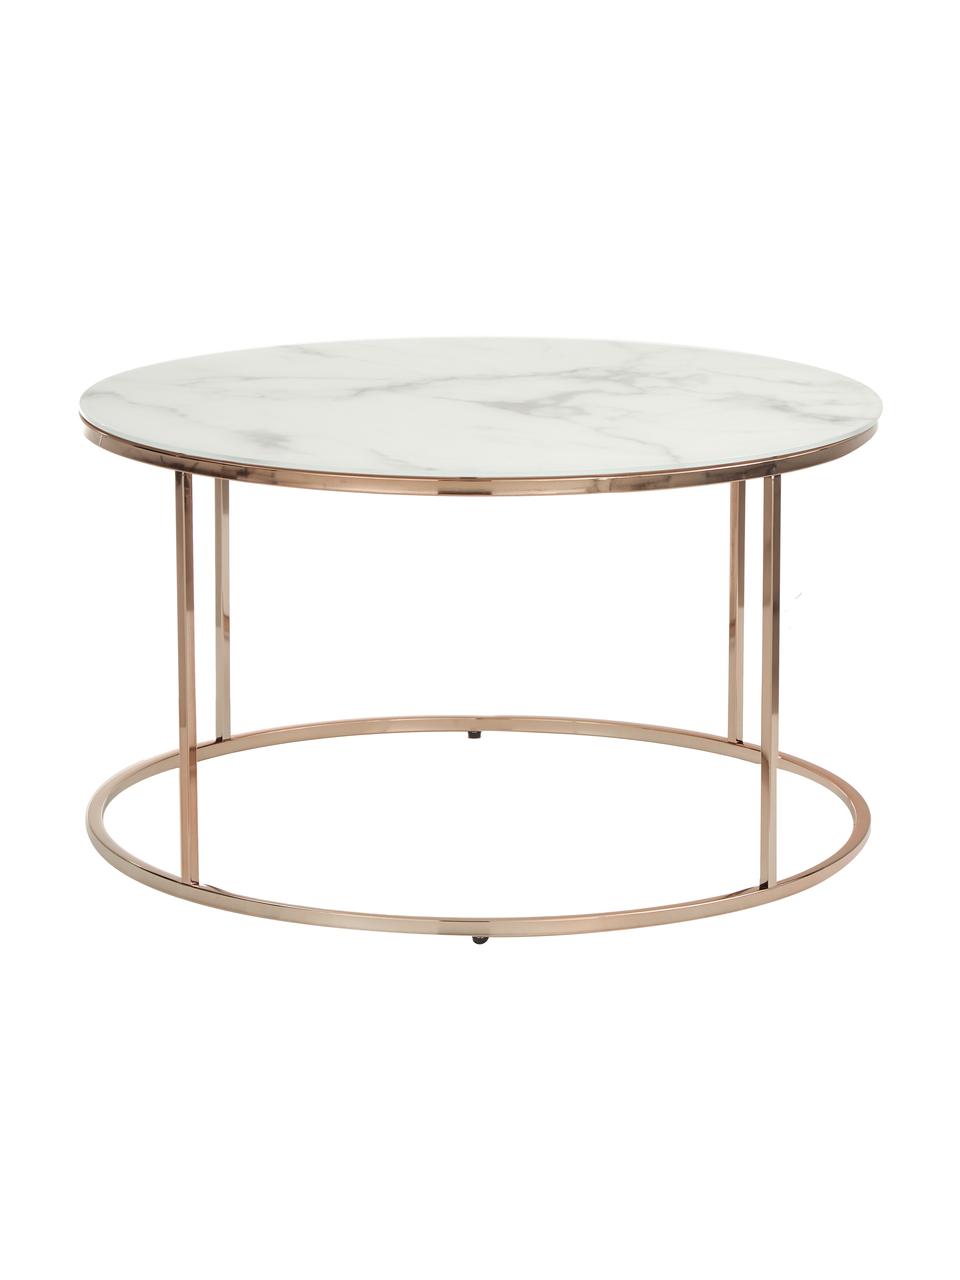 Table basse ronde verre aspect marbre Antigua, Blanc, marbré, couleur dorée rose, Ø 80 x haut. 45 cm